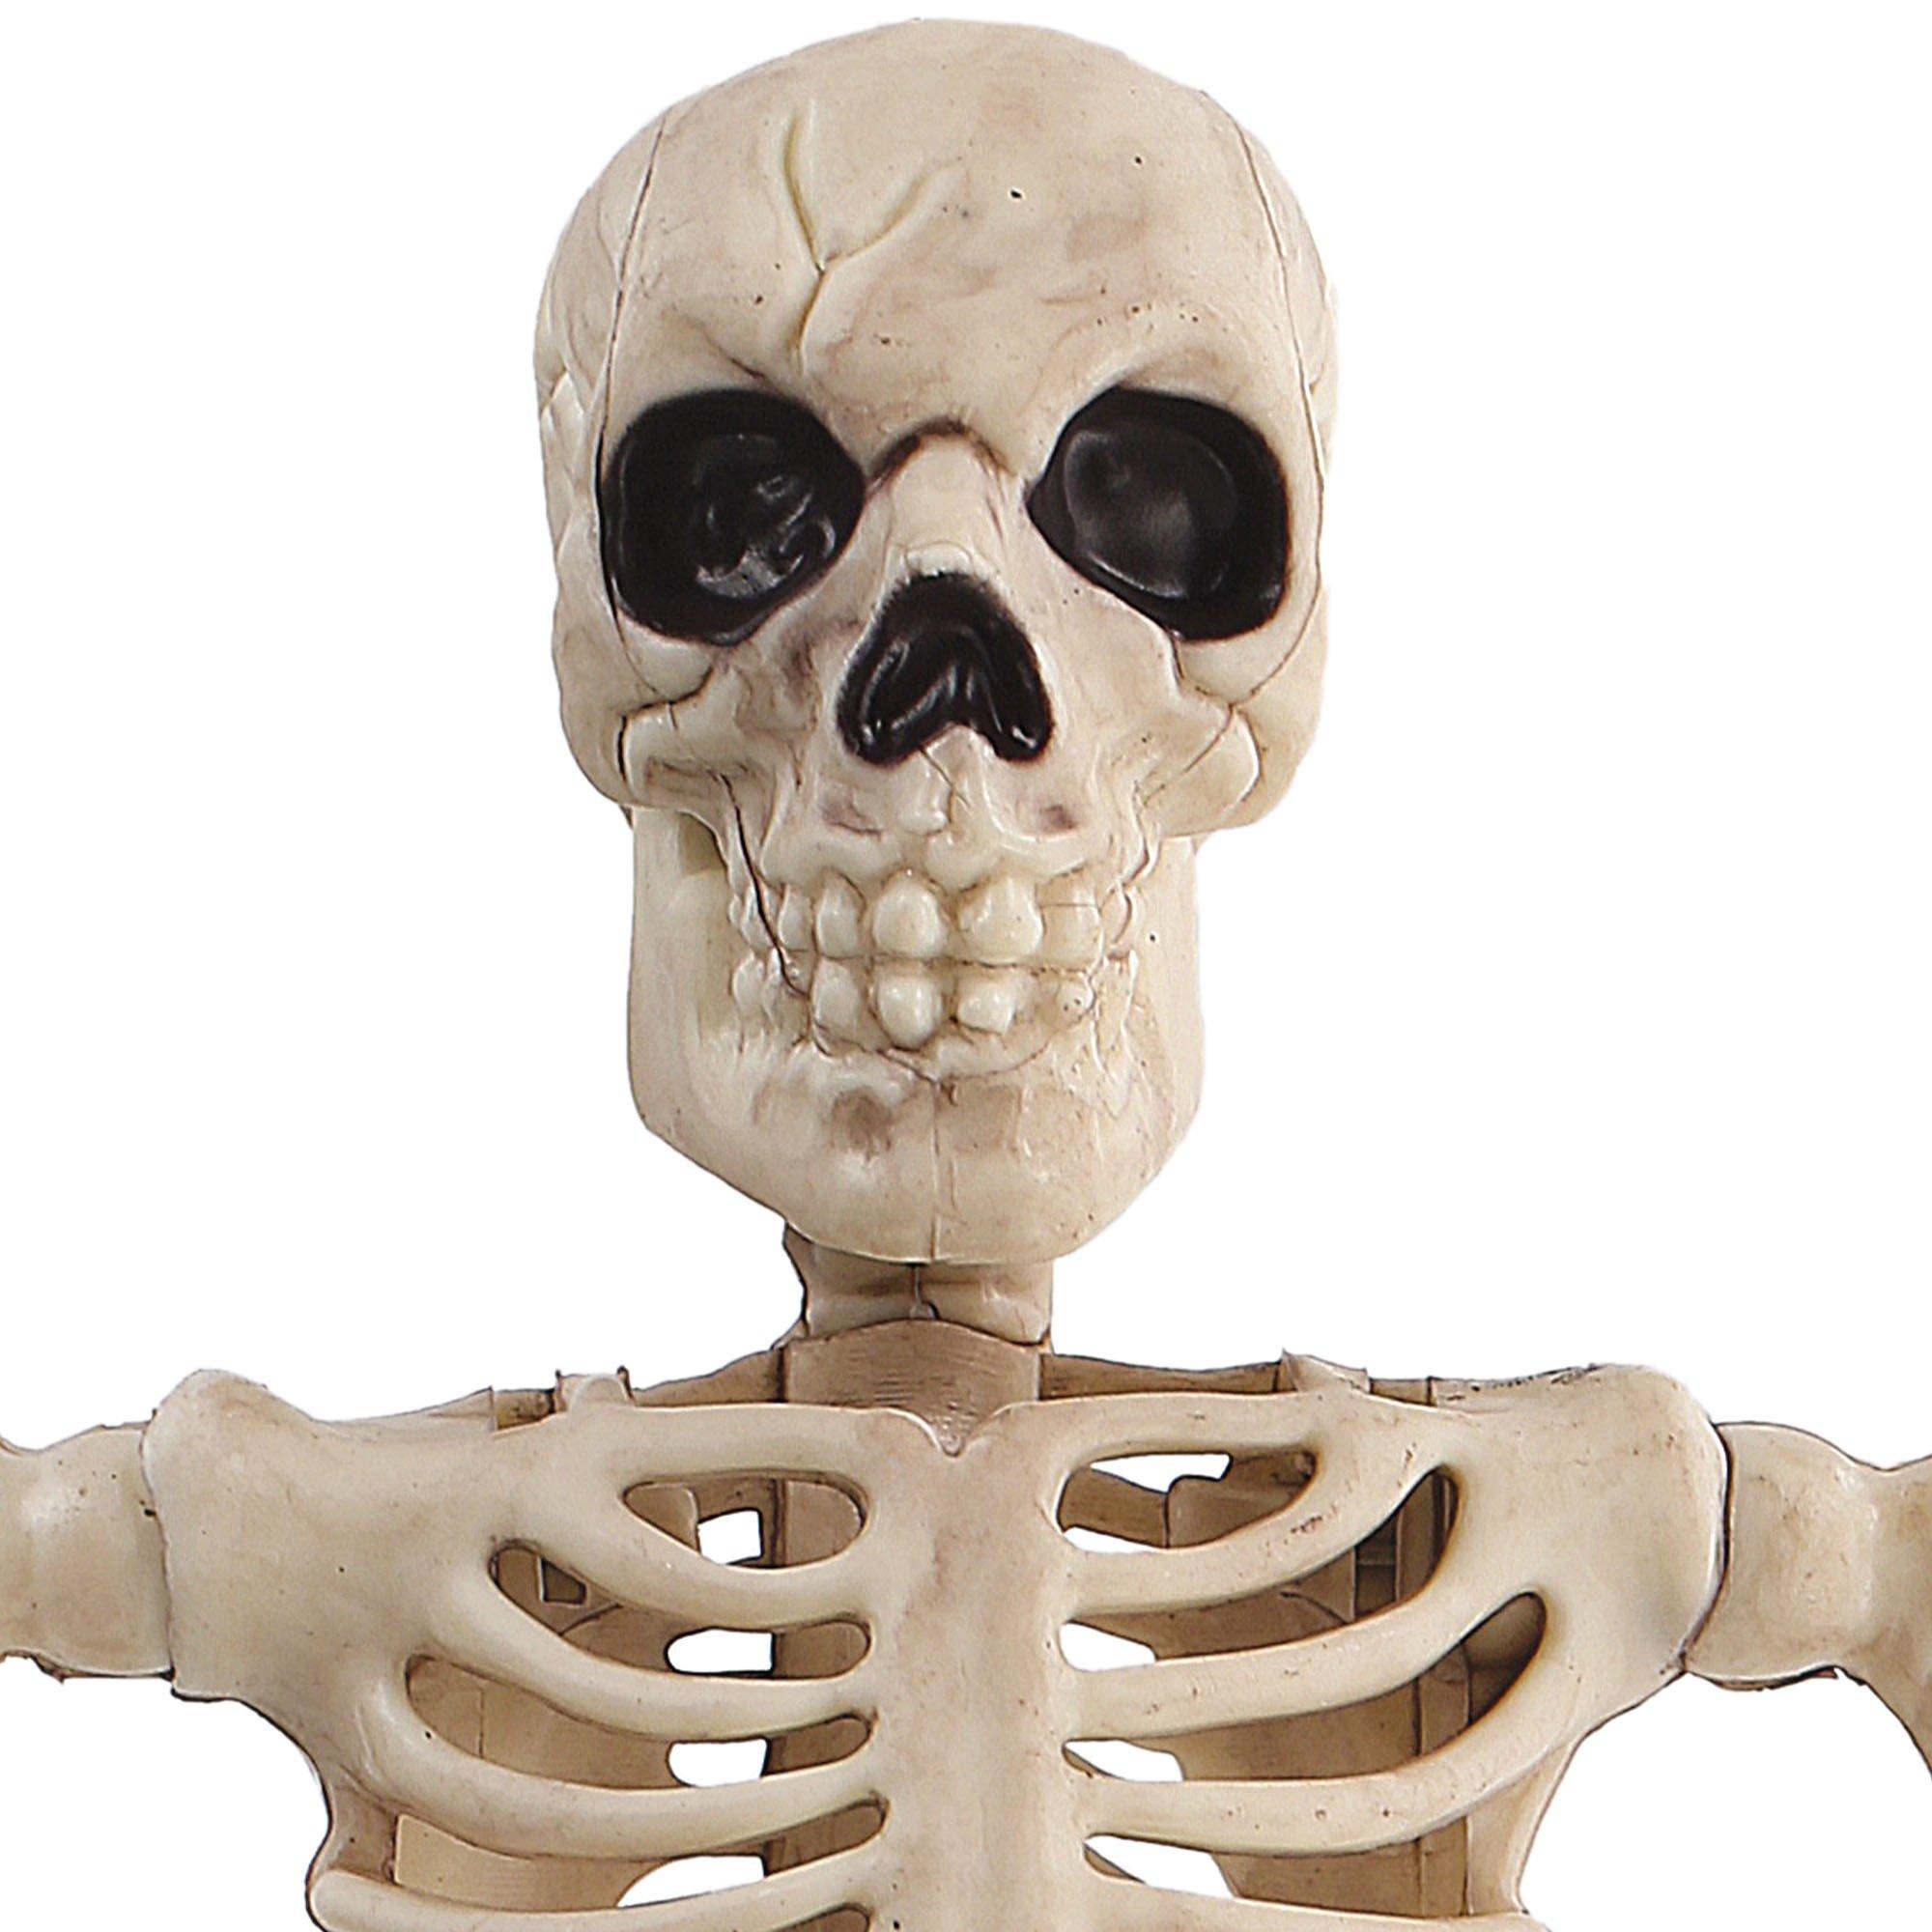 Halloween Movable Skeleton Human Model Skull Full Body Mini Figure Toy